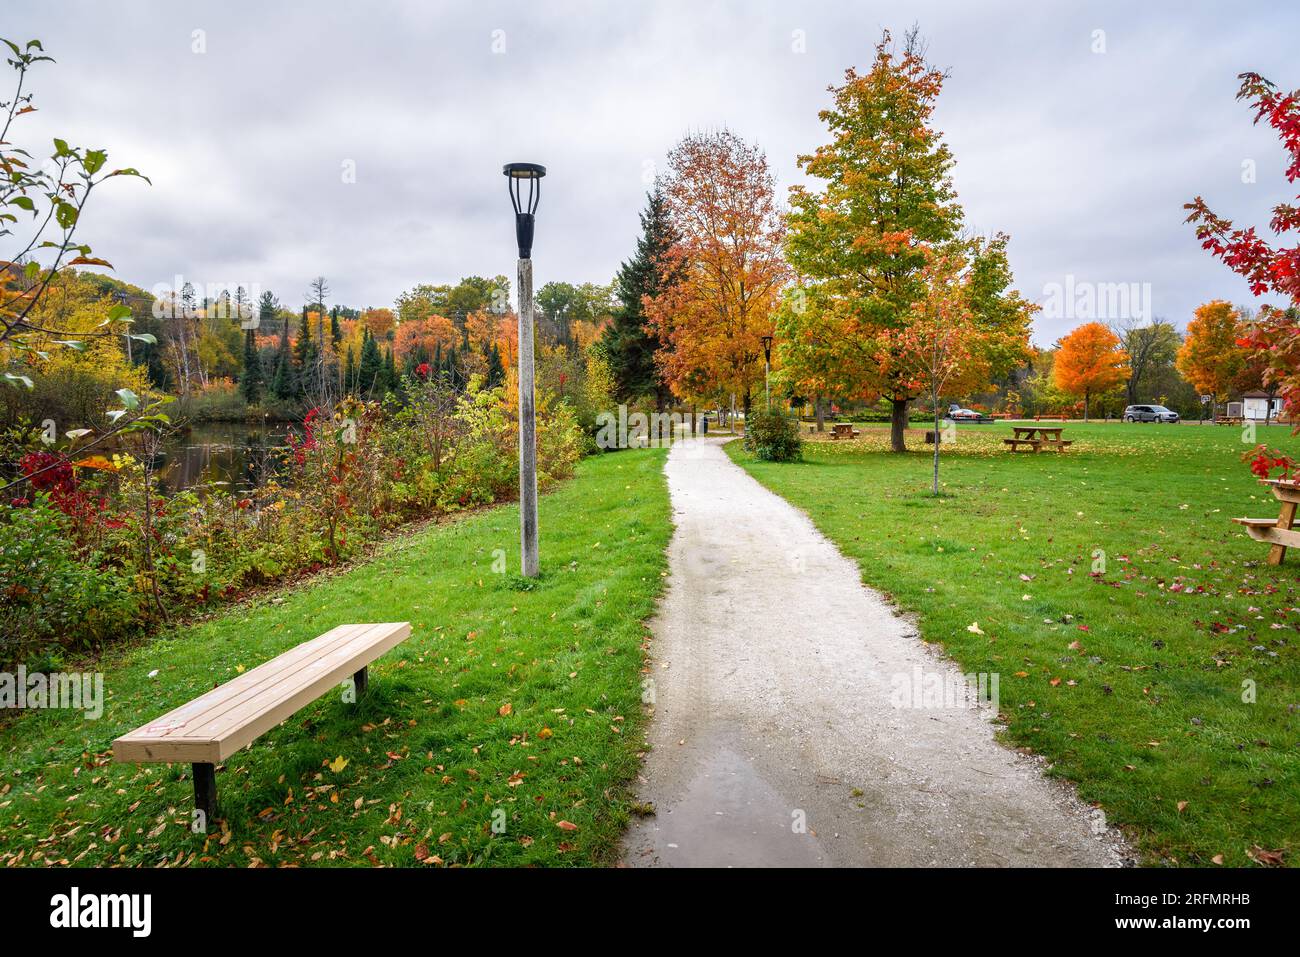 Sentiero deserto fiancheggiato da lampioni e panchine in un parco sulle rive del fiume in una giornata d'autunno Foto Stock